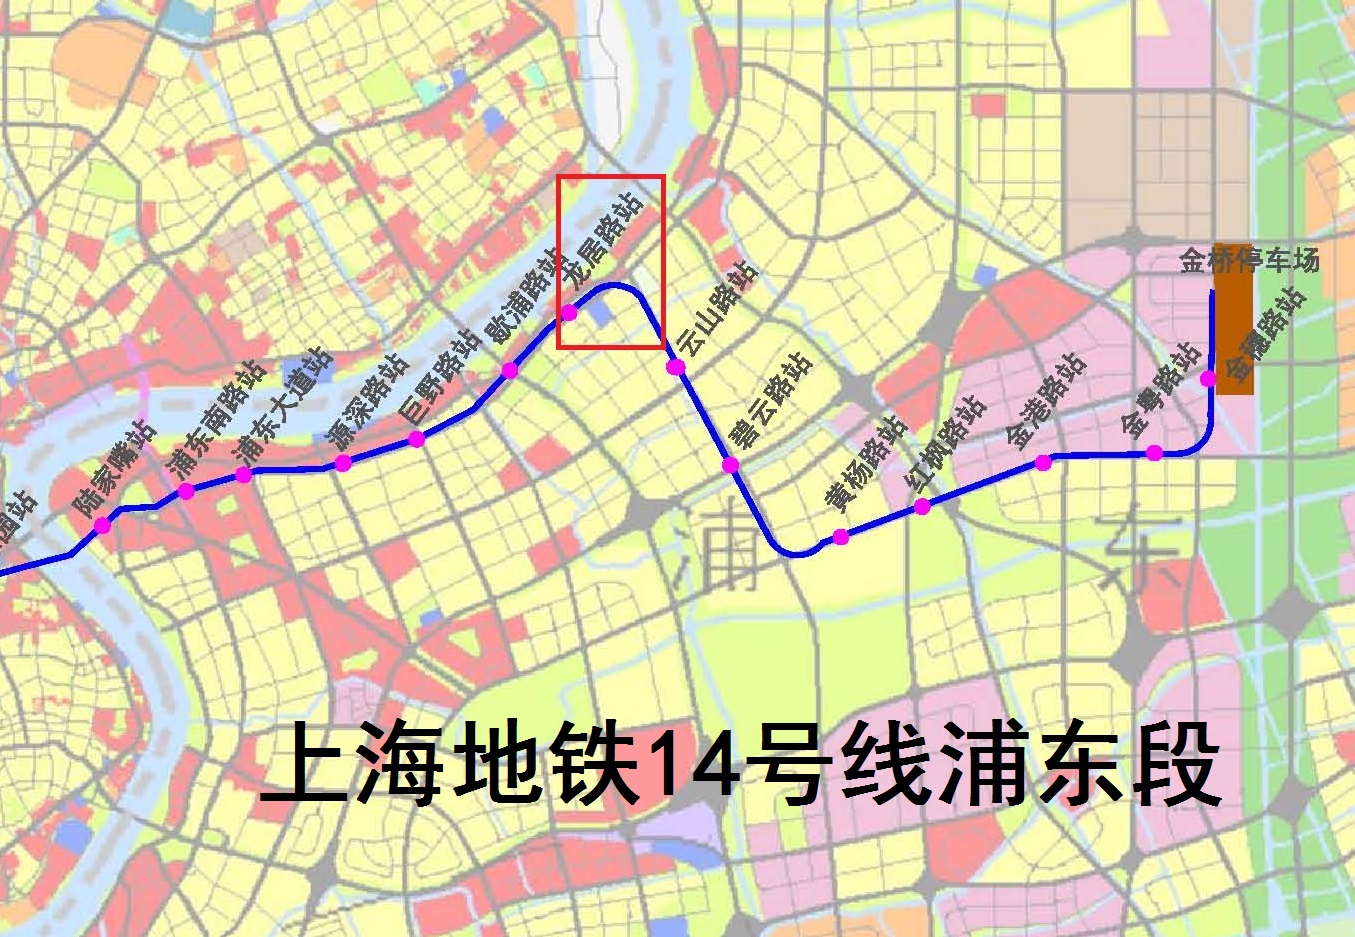 上海地铁14号线龙居路站建设初具规模:在黄浦江南岸的浦东大道上